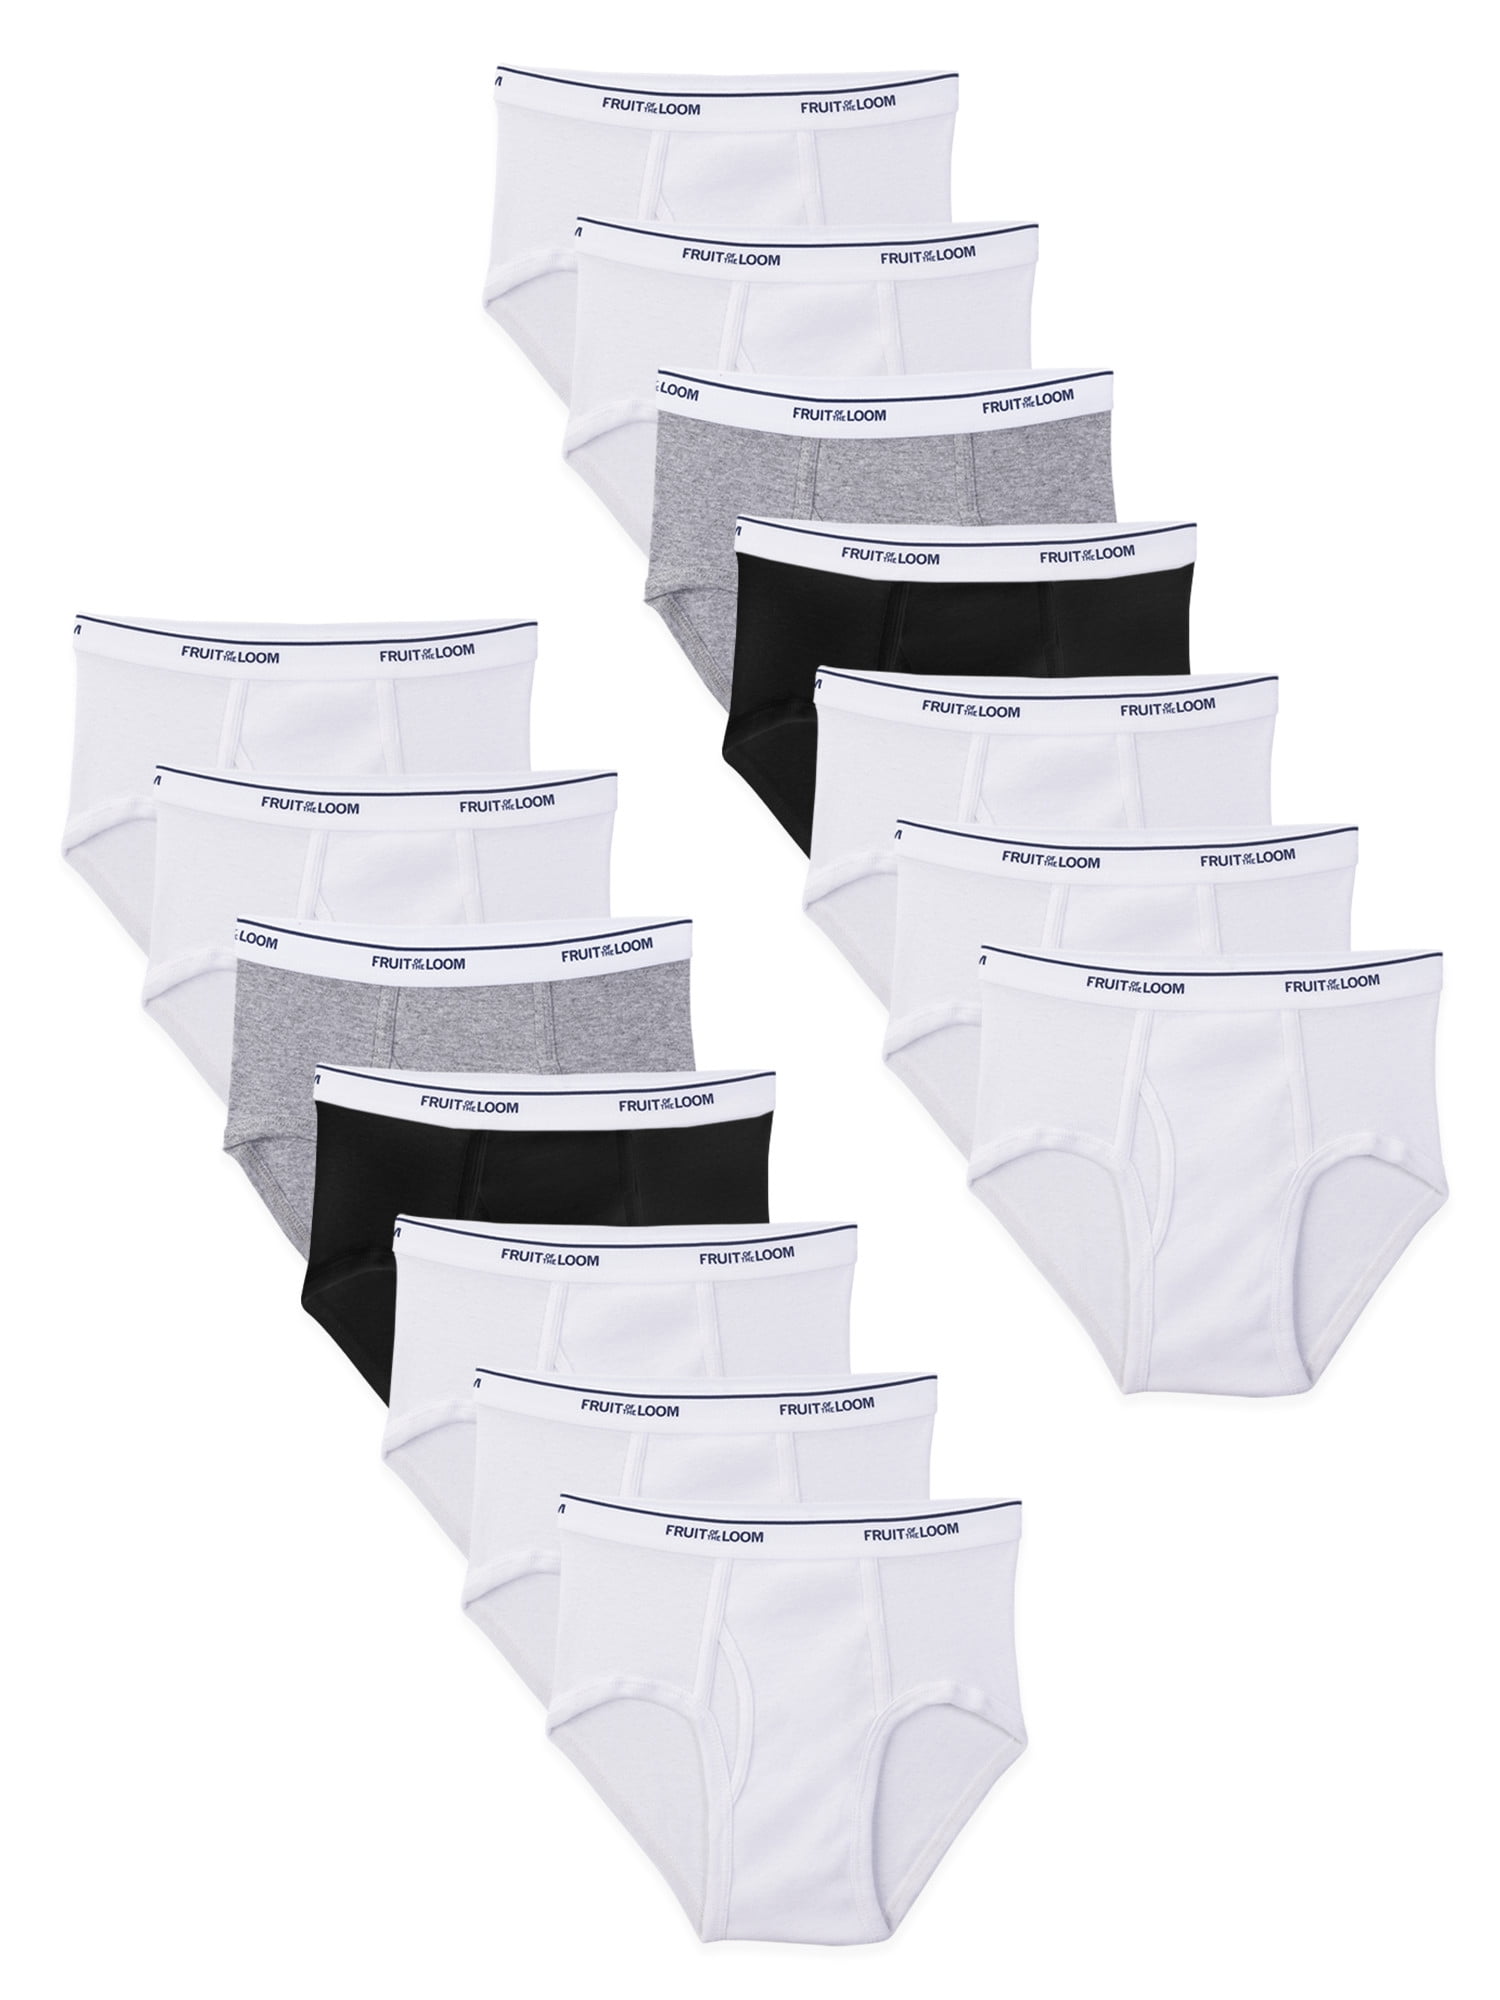 Spider-Man Boys Underwear, 5 Pack Briefs Sizes 4 - 8 